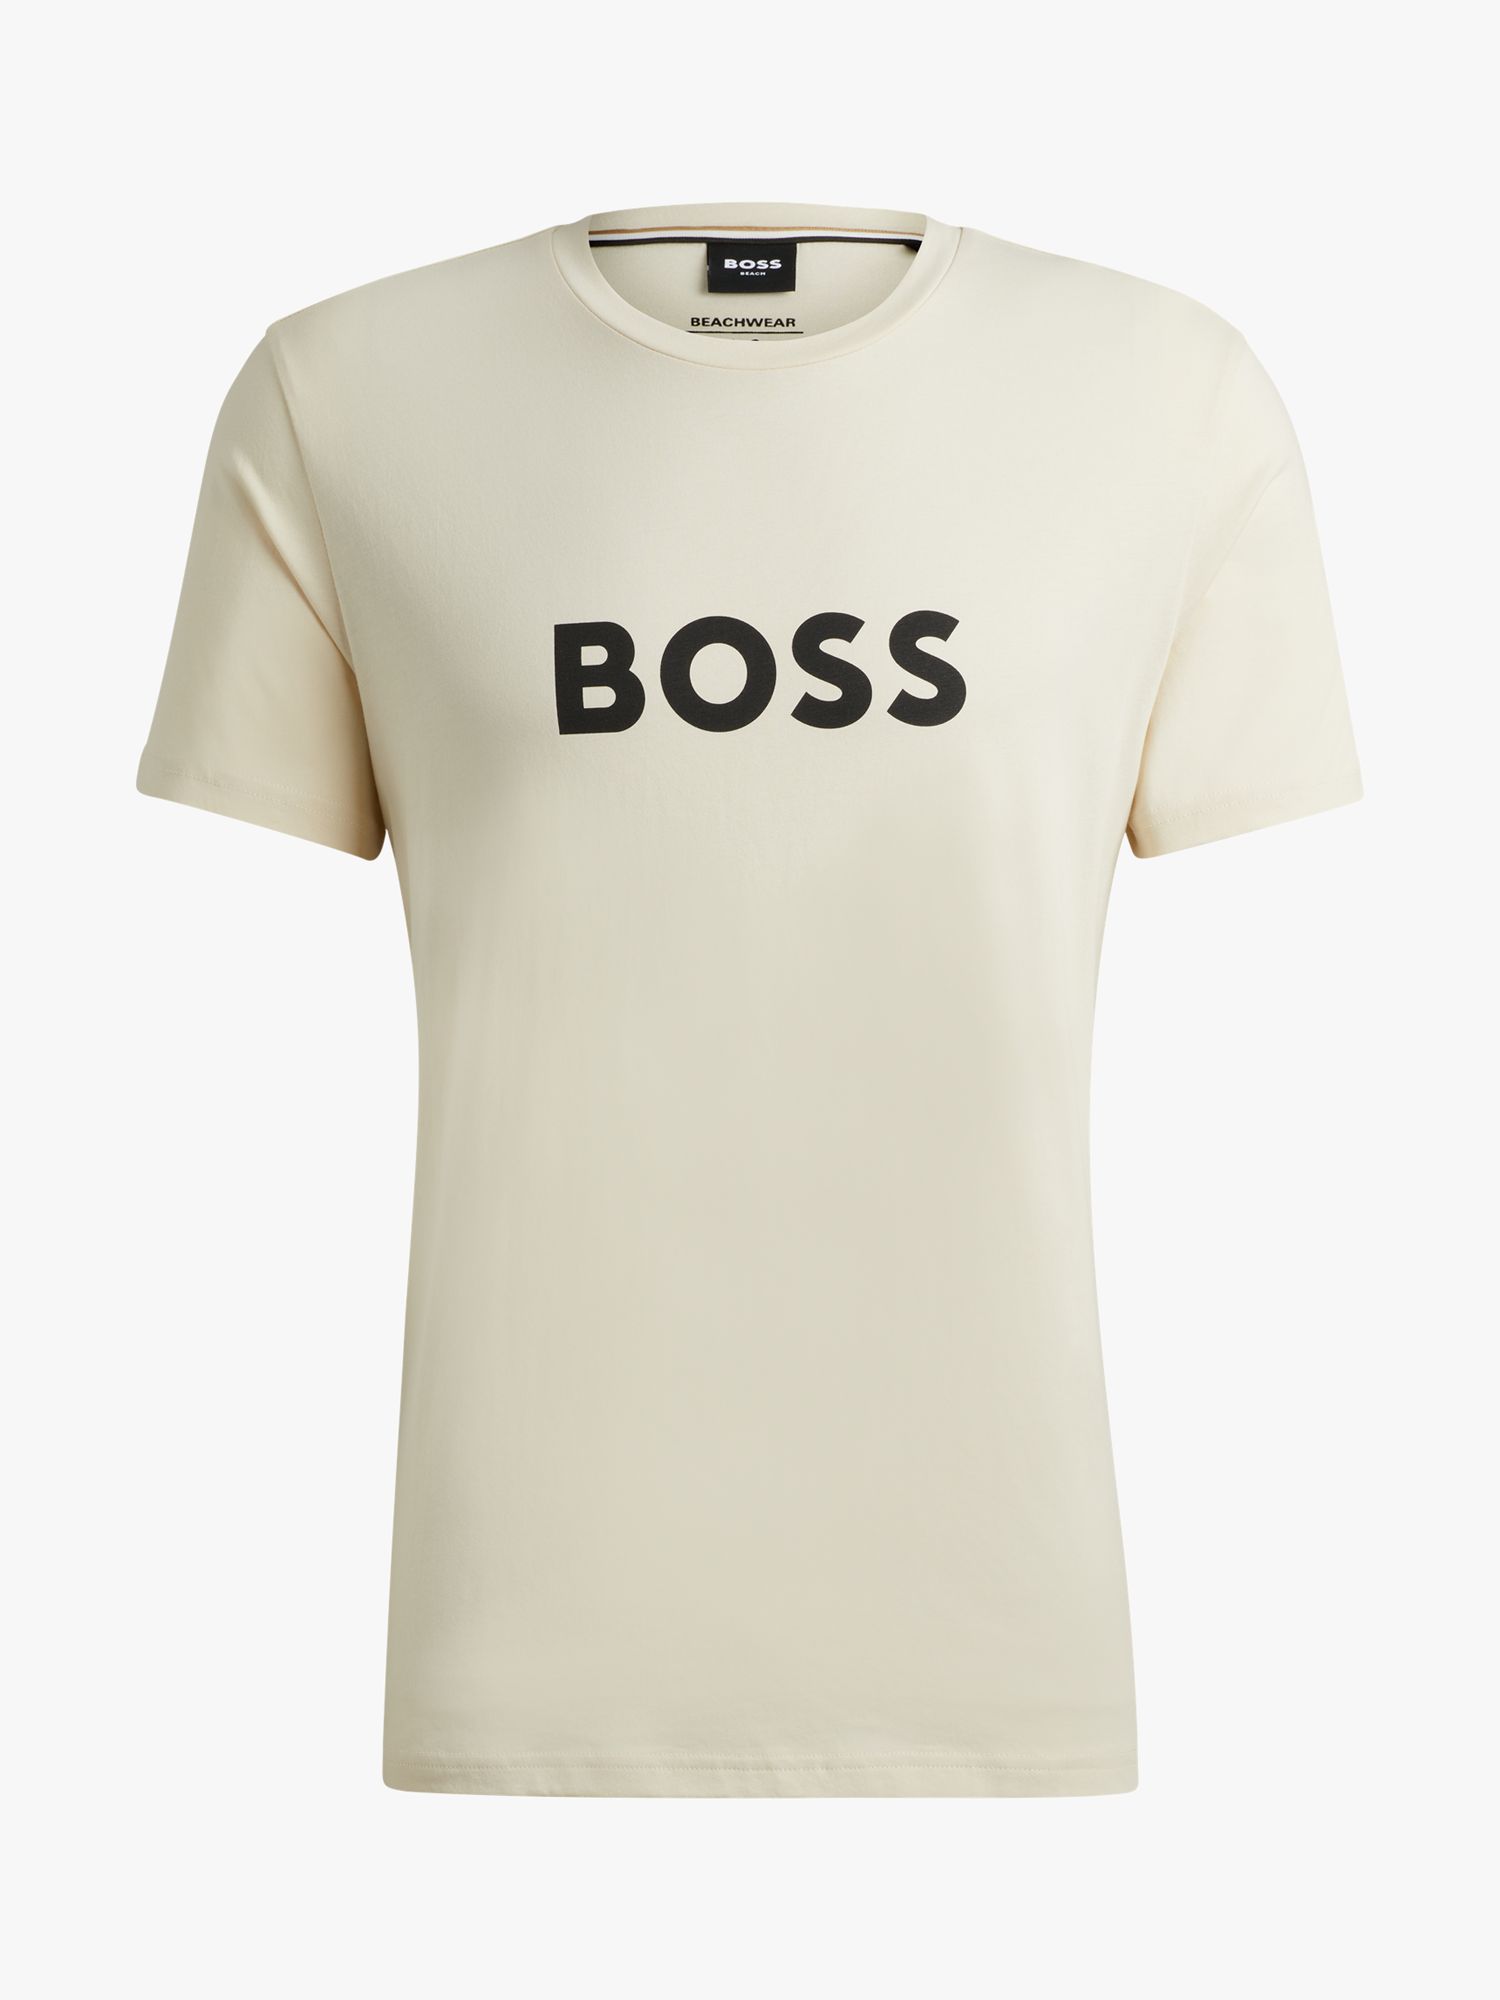 Buy BOSS Regular Fit Logo T-Shirt, White Online at johnlewis.com